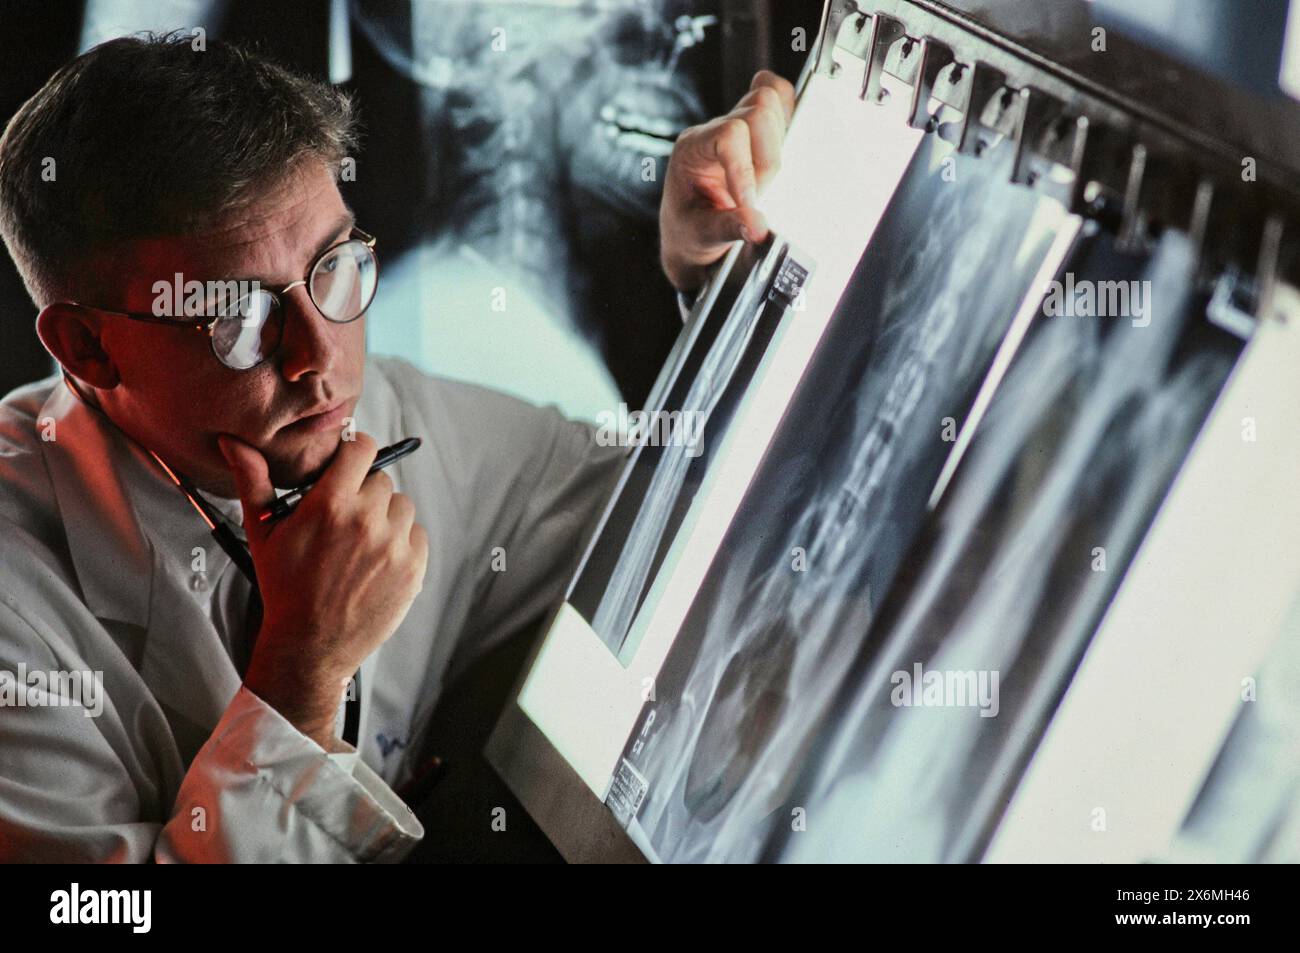 Dans un établissement médical, un médecin examine de près des images radiographiques numériques affichées sur un grand moniteur pour diagnostiquer et évaluer l'état d'un patient. T Banque D'Images